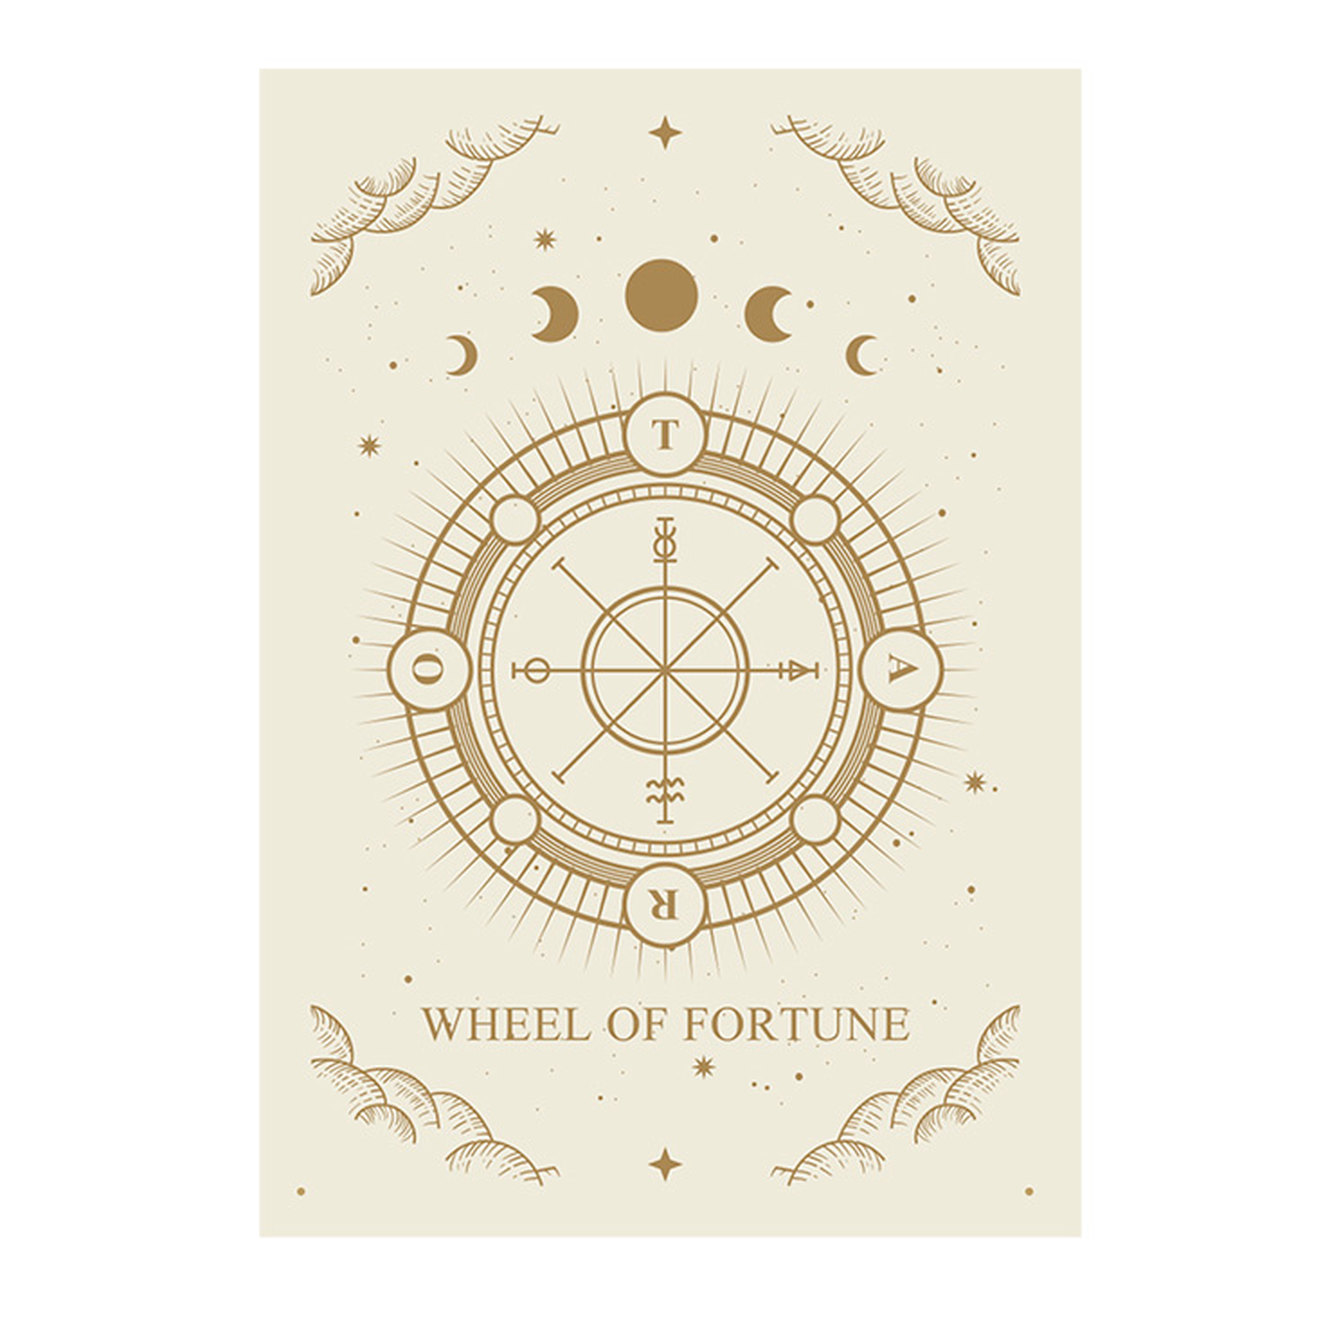 کارت Wheel of Fortune می گوید: "آیا باور نمی کنی چیزی ممکن است؟" حالا شما خواهید دانست!